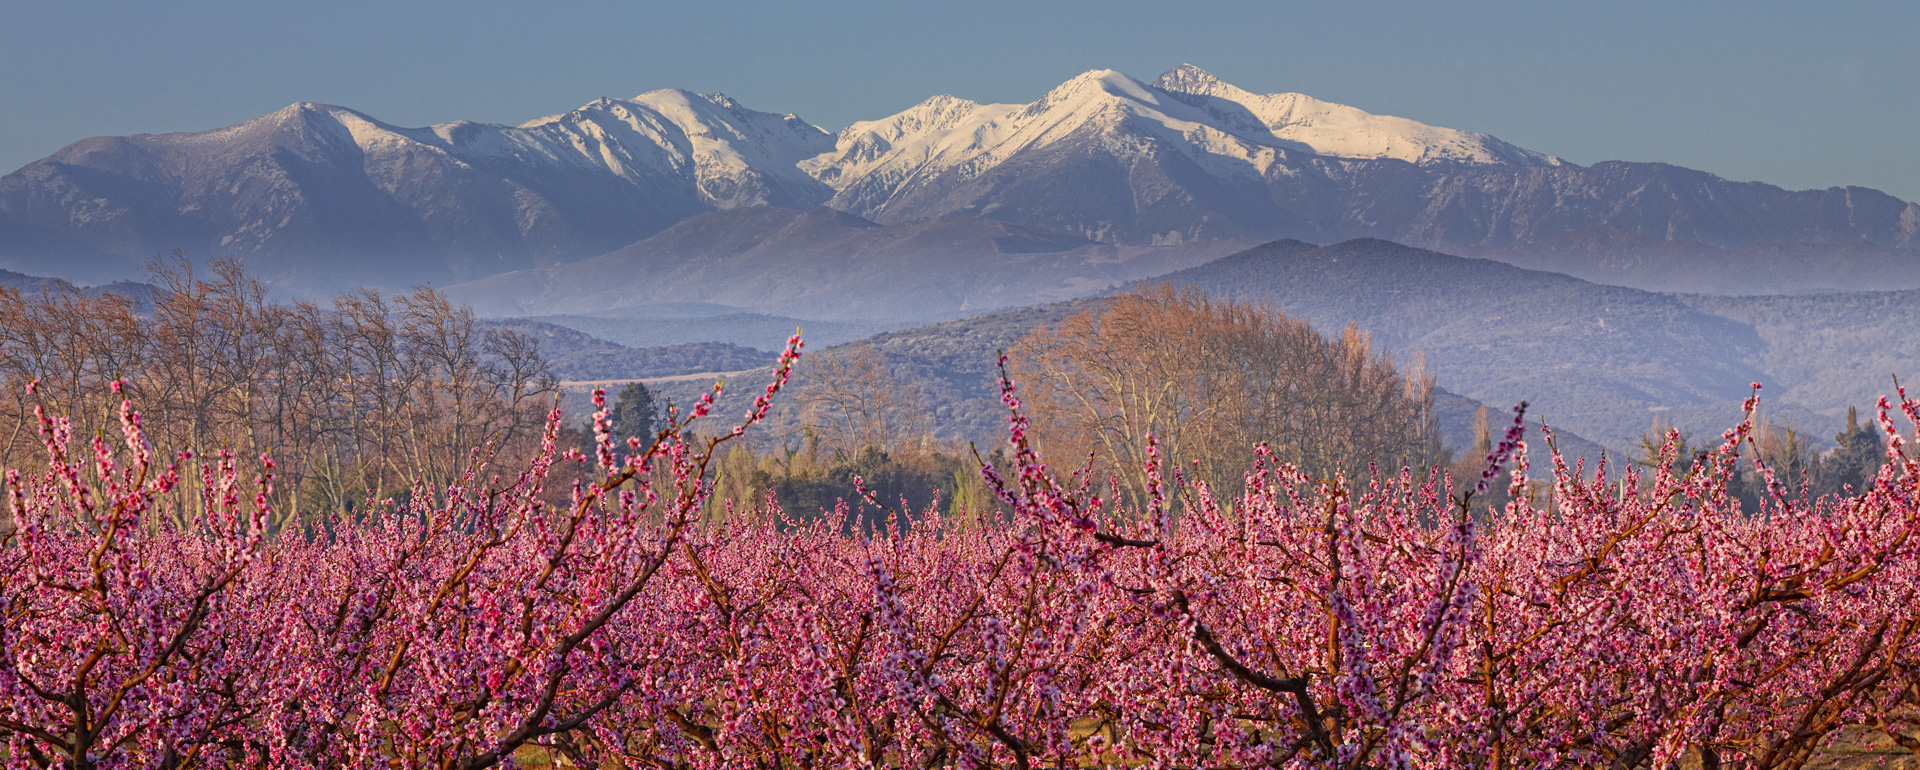 Massif du Canigou et vergers au printemps - Pyrénées-Orientales